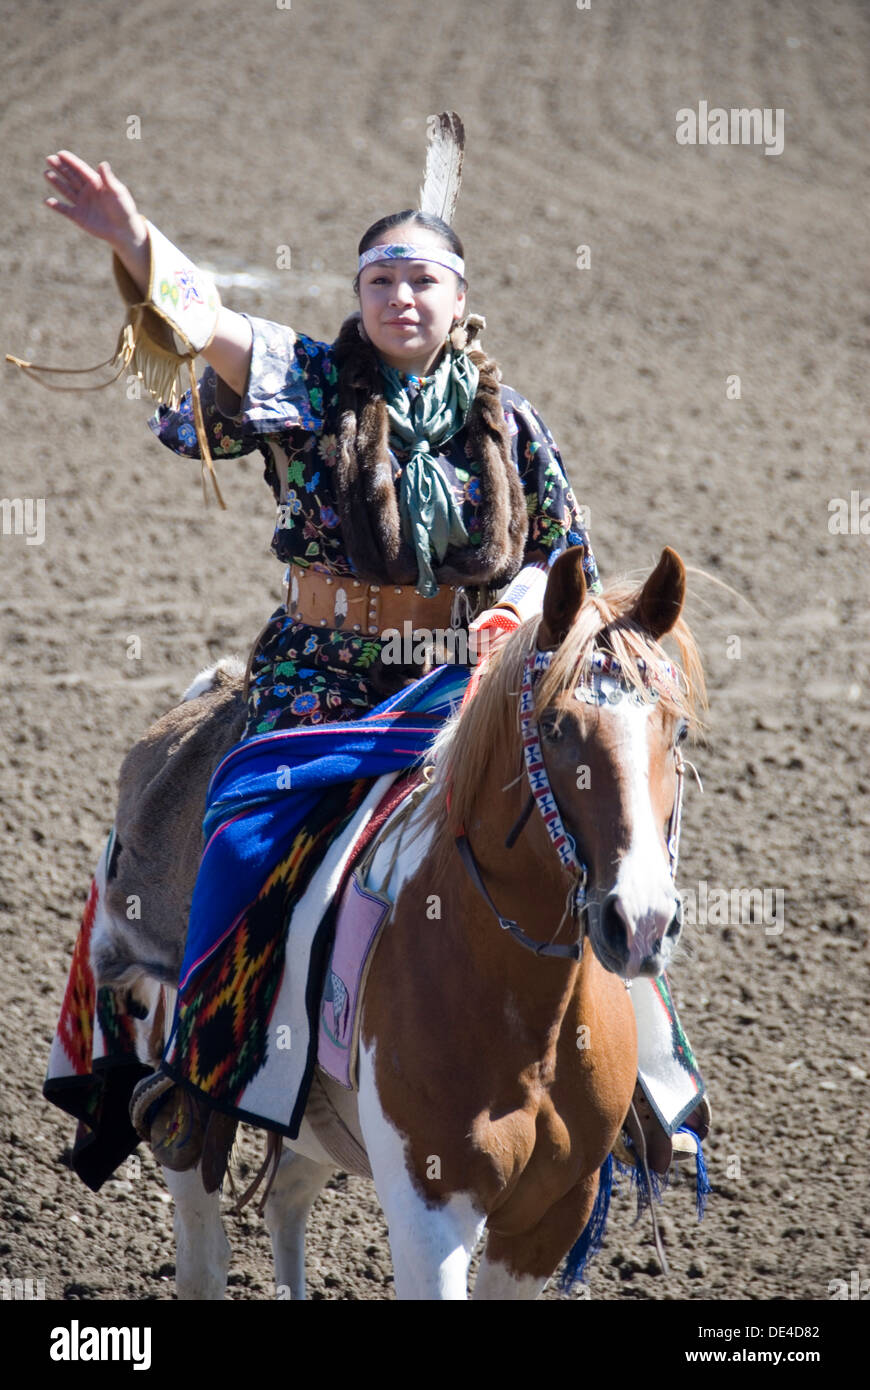 Indian als in traditioneller Kleidung Reiten Reiten salutieren, Ellensburg Rodeo Eröffnungsfeier, 2012 WA USA Stockfoto